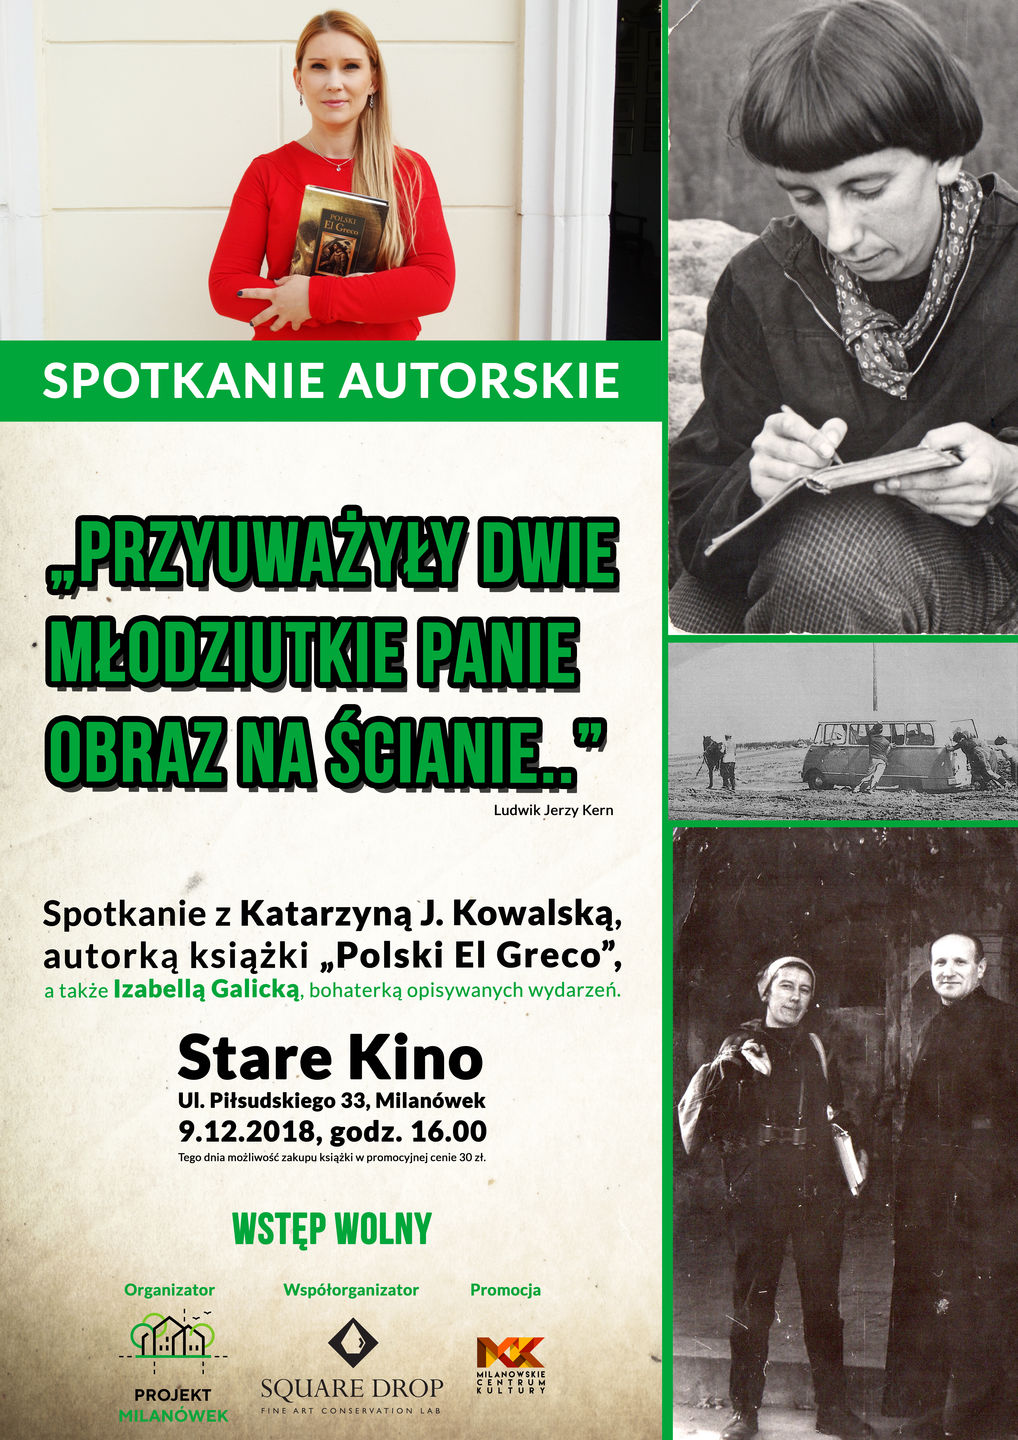 Plakat informujący o spotkaniu autorskim z Katarzyną J. Kowalską